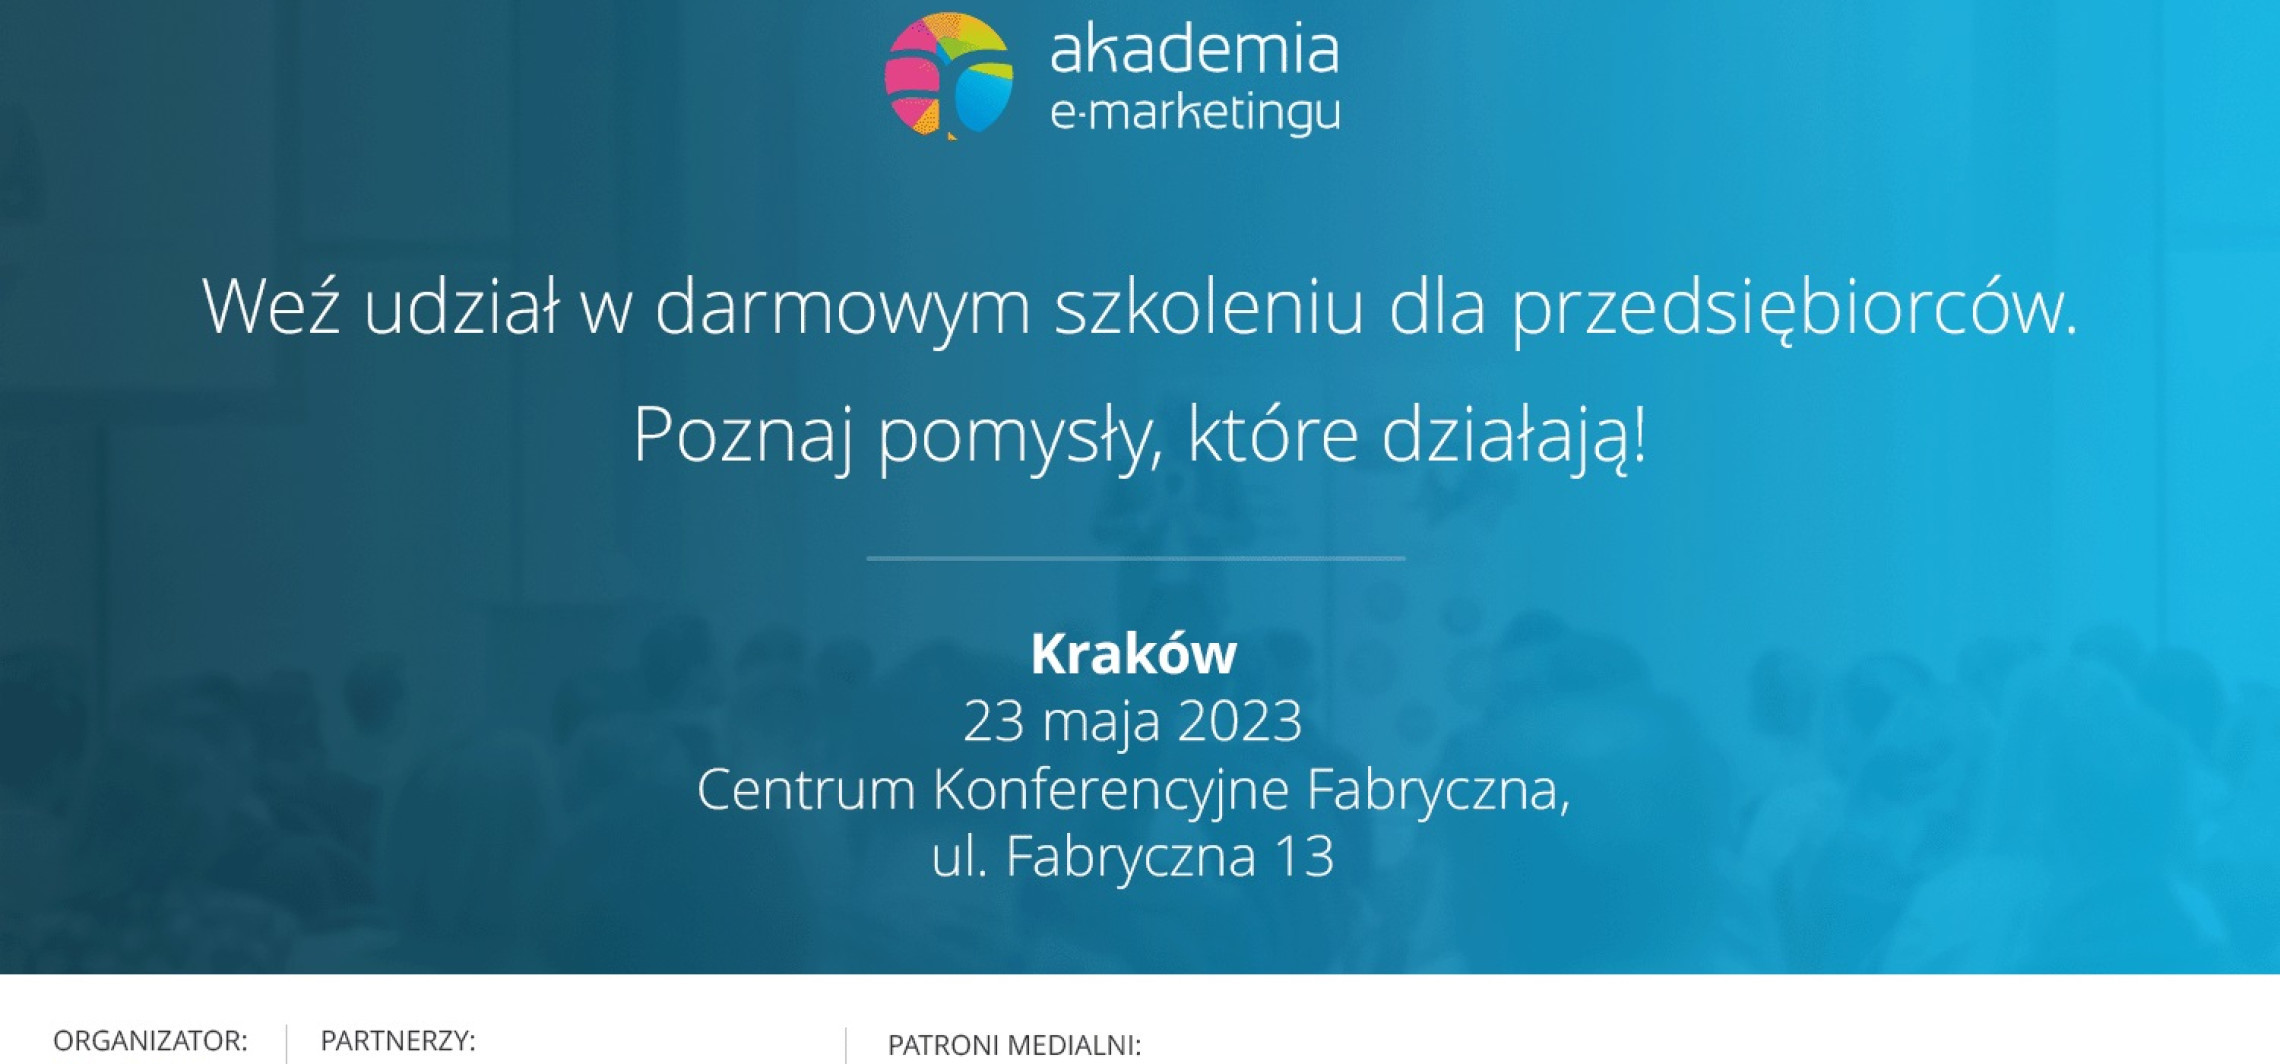 Kraj - 11. edycja Akademii e-marketingu w Krakowie. Przedsiębiorcy wezmą udział w bezpłatnym szkoleniu